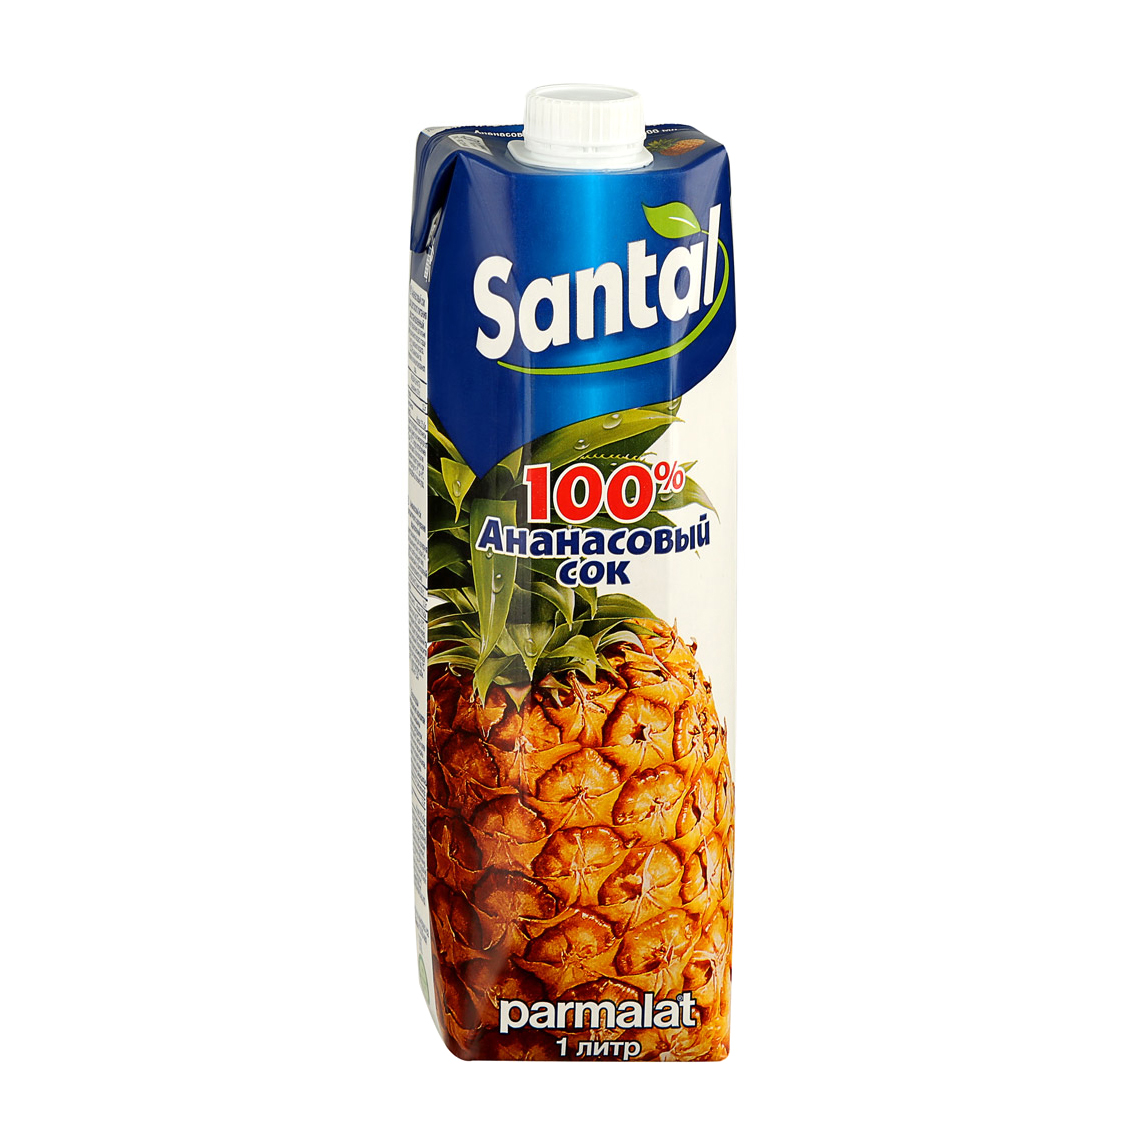 Сок Santal ананасовый 100% 1 л сок santal ананасовый 100% 1 л